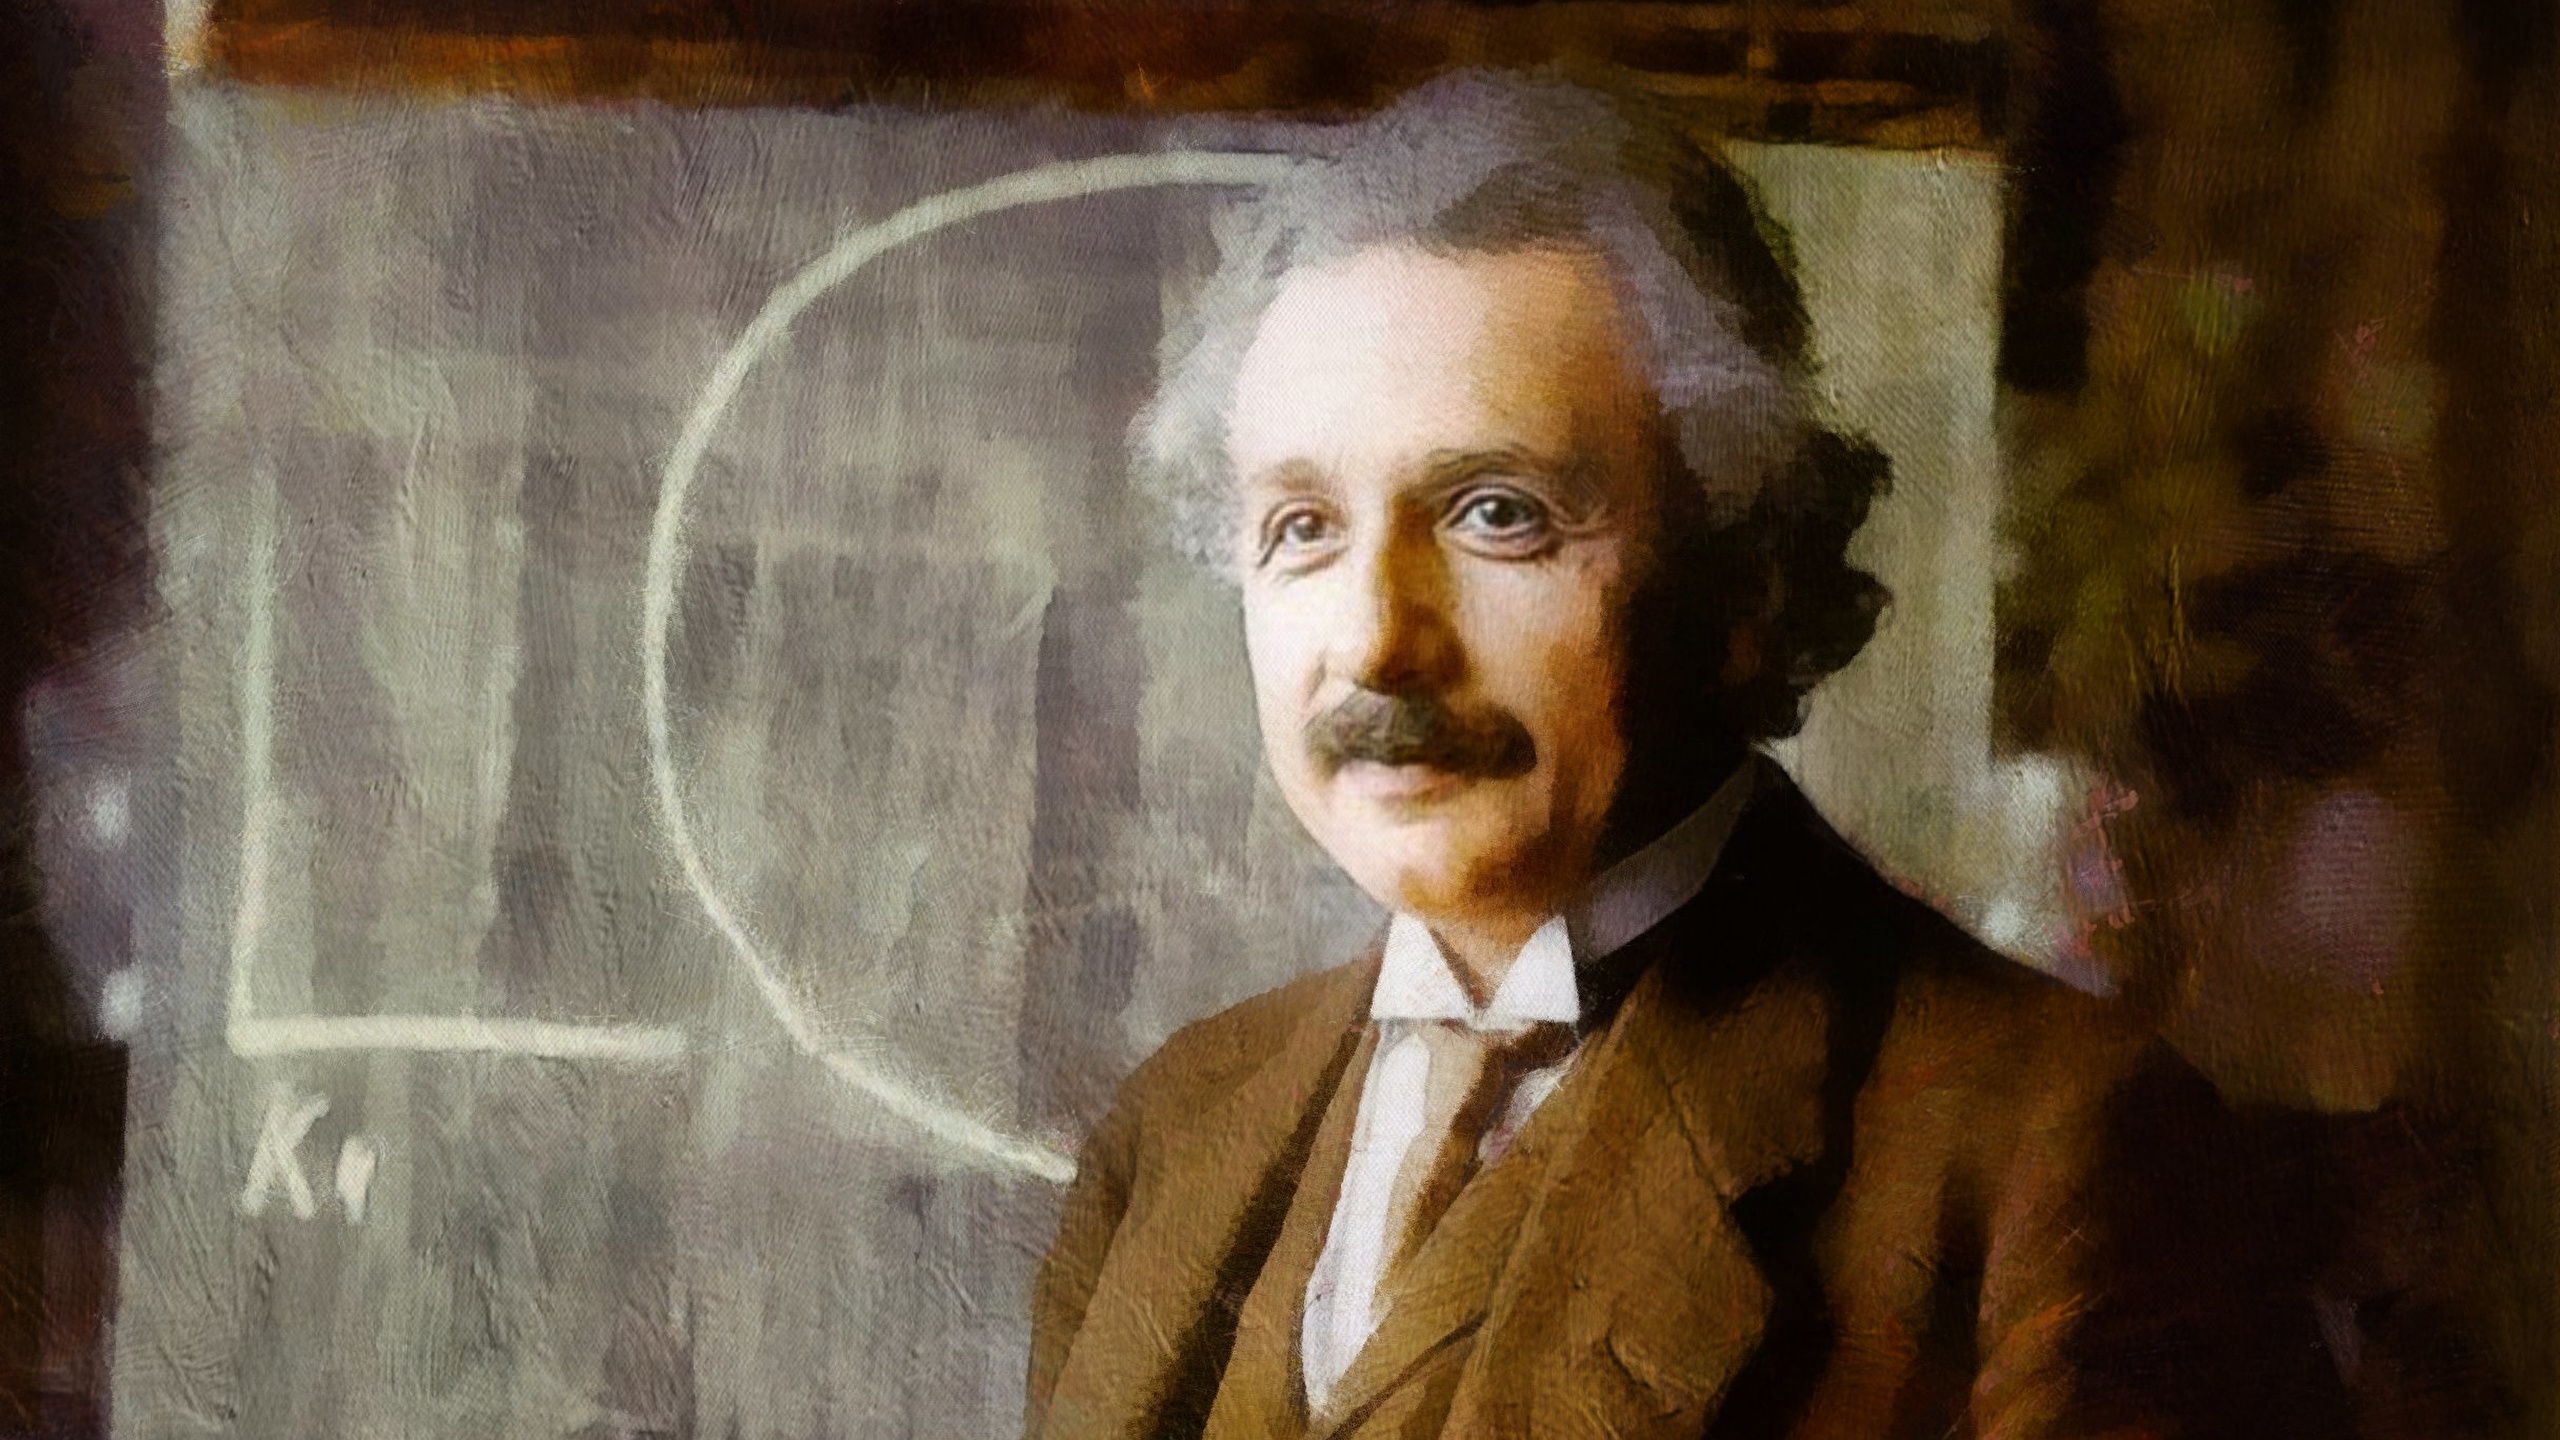 壁紙 2560x1440 男性 描かれた壁紙 アルベルト アインシュタイン 有名人 ダウンロード 写真